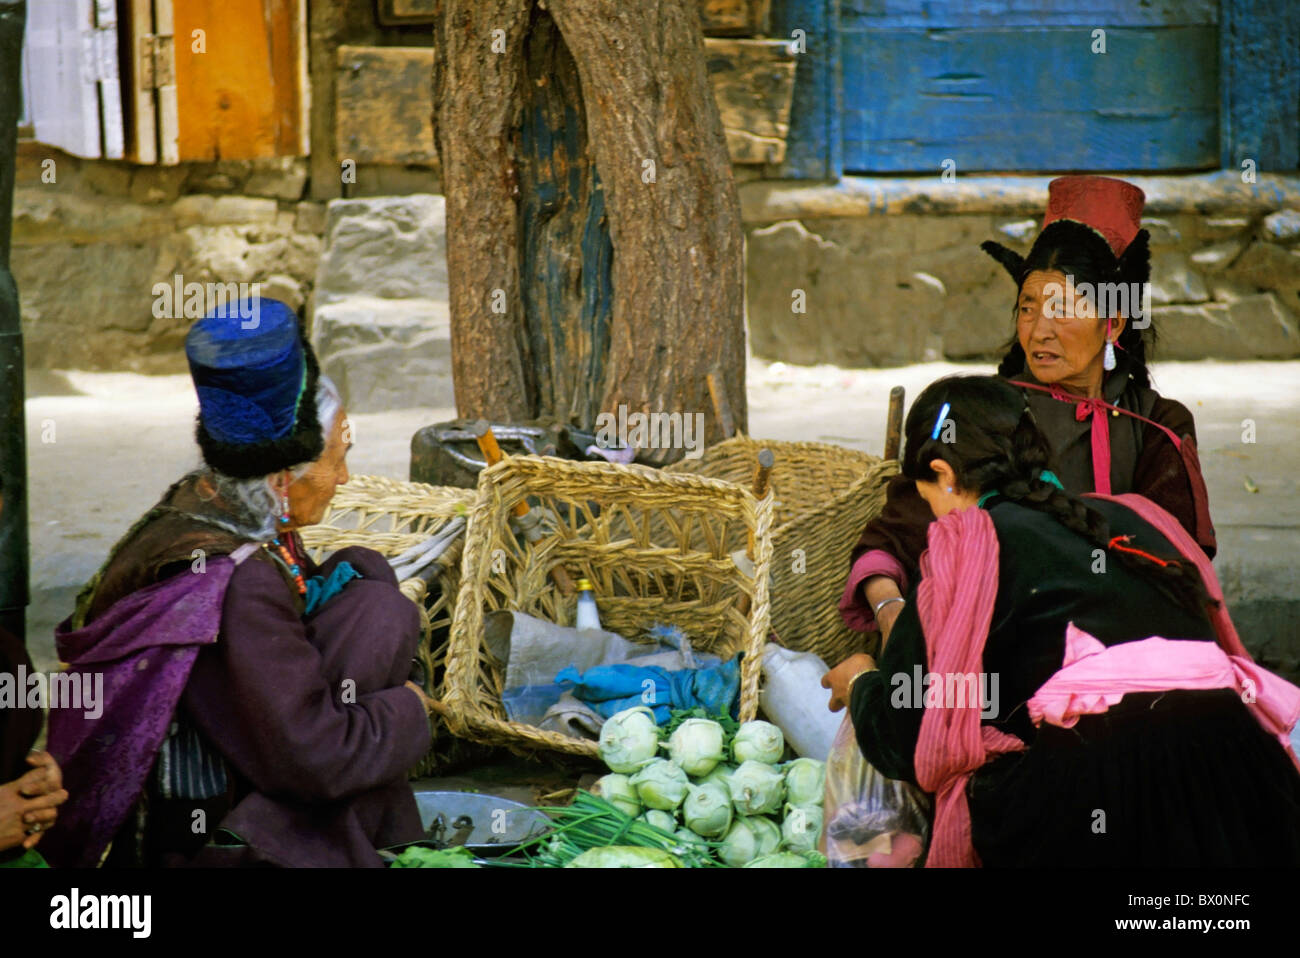 Retrato de tres mujeres tibetanas hablando juntos en un mercado, Ladakh, India. Foto de stock